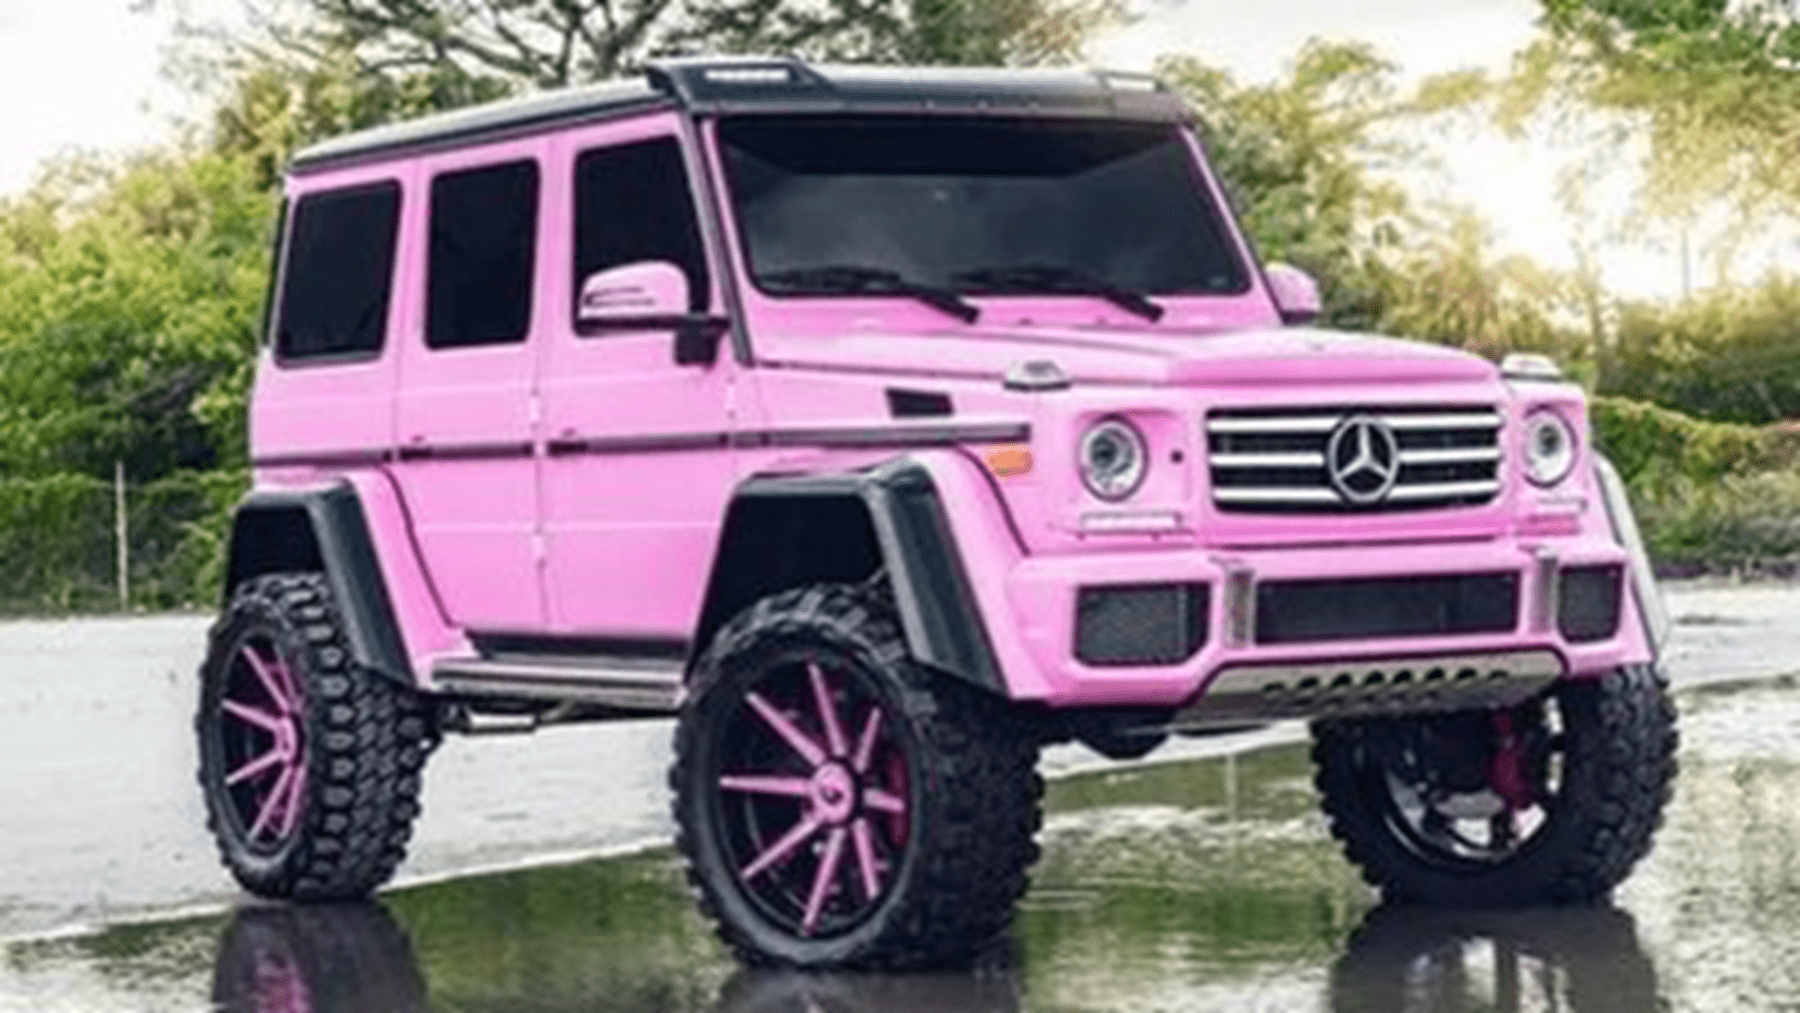 浙江就有一台非常与众不同的奔驰大g,这辆车全身为芭比粉色,看到这样